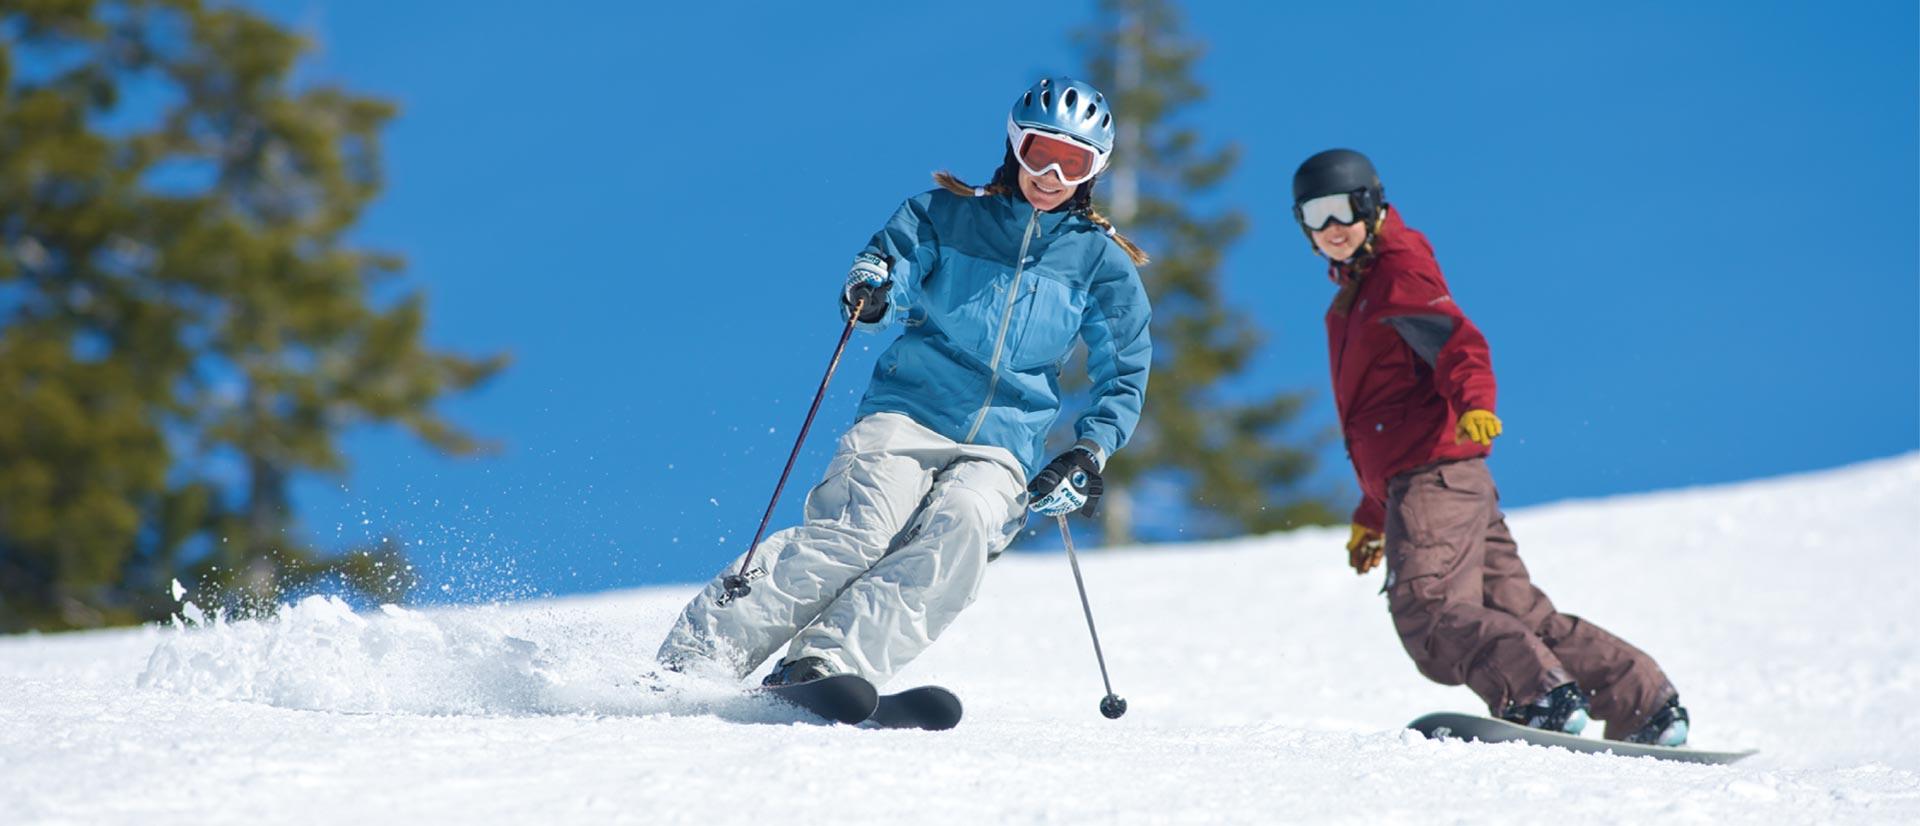 Snow Skier Logo - Dodge Ridge Ski Area closest California Snow to the Bay Area ...